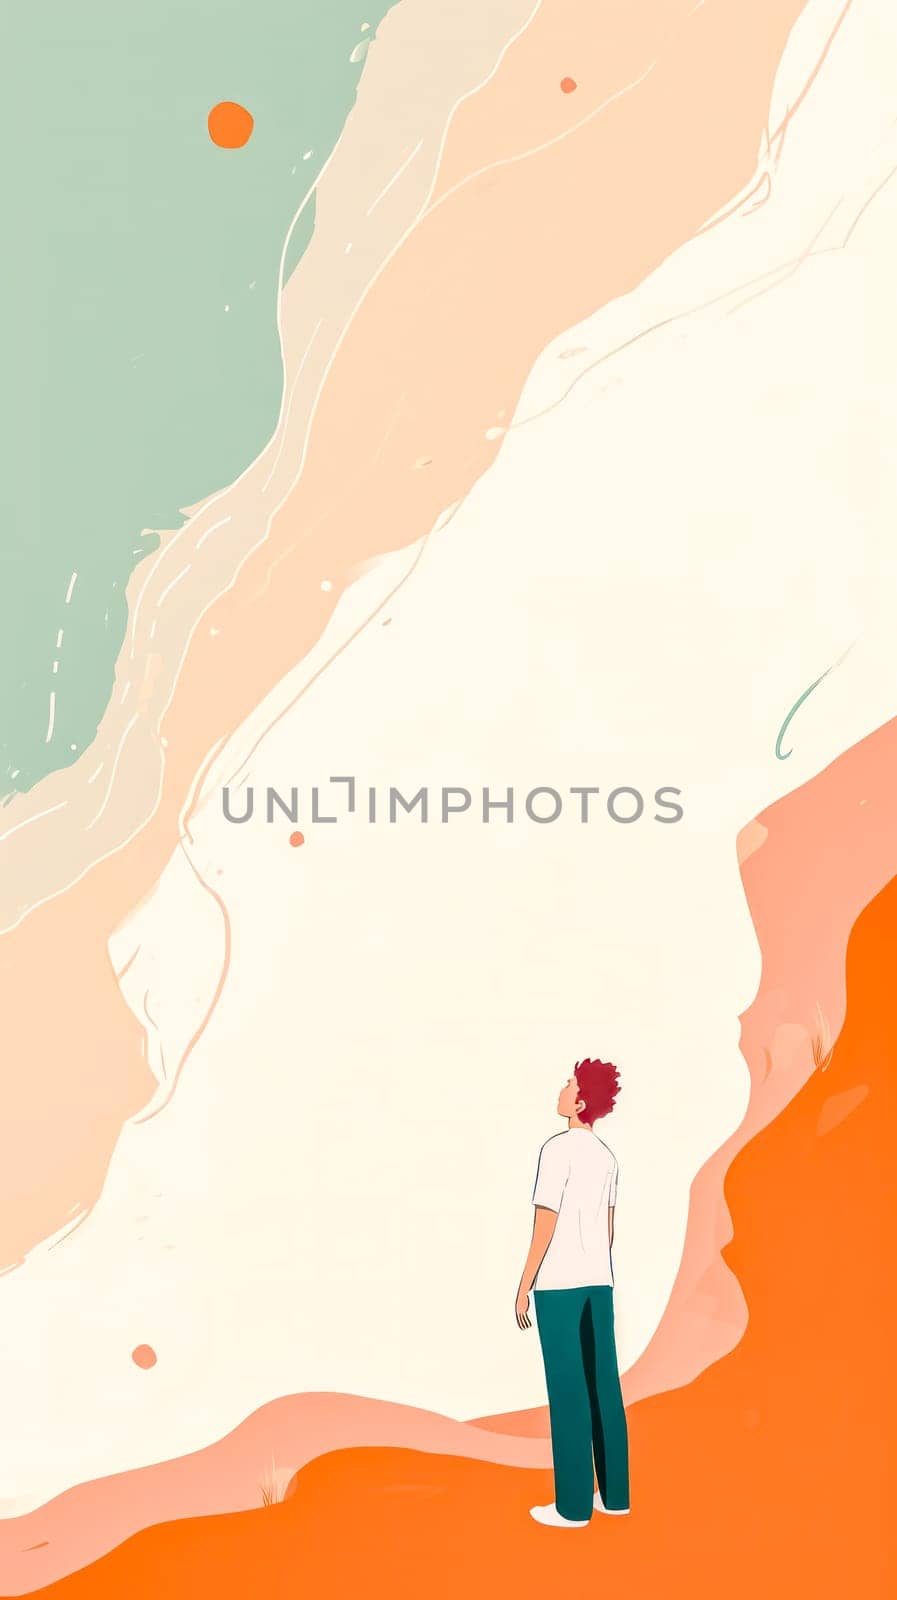 Contemplative figure against a minimalist desert landscape with a large sun. vertical